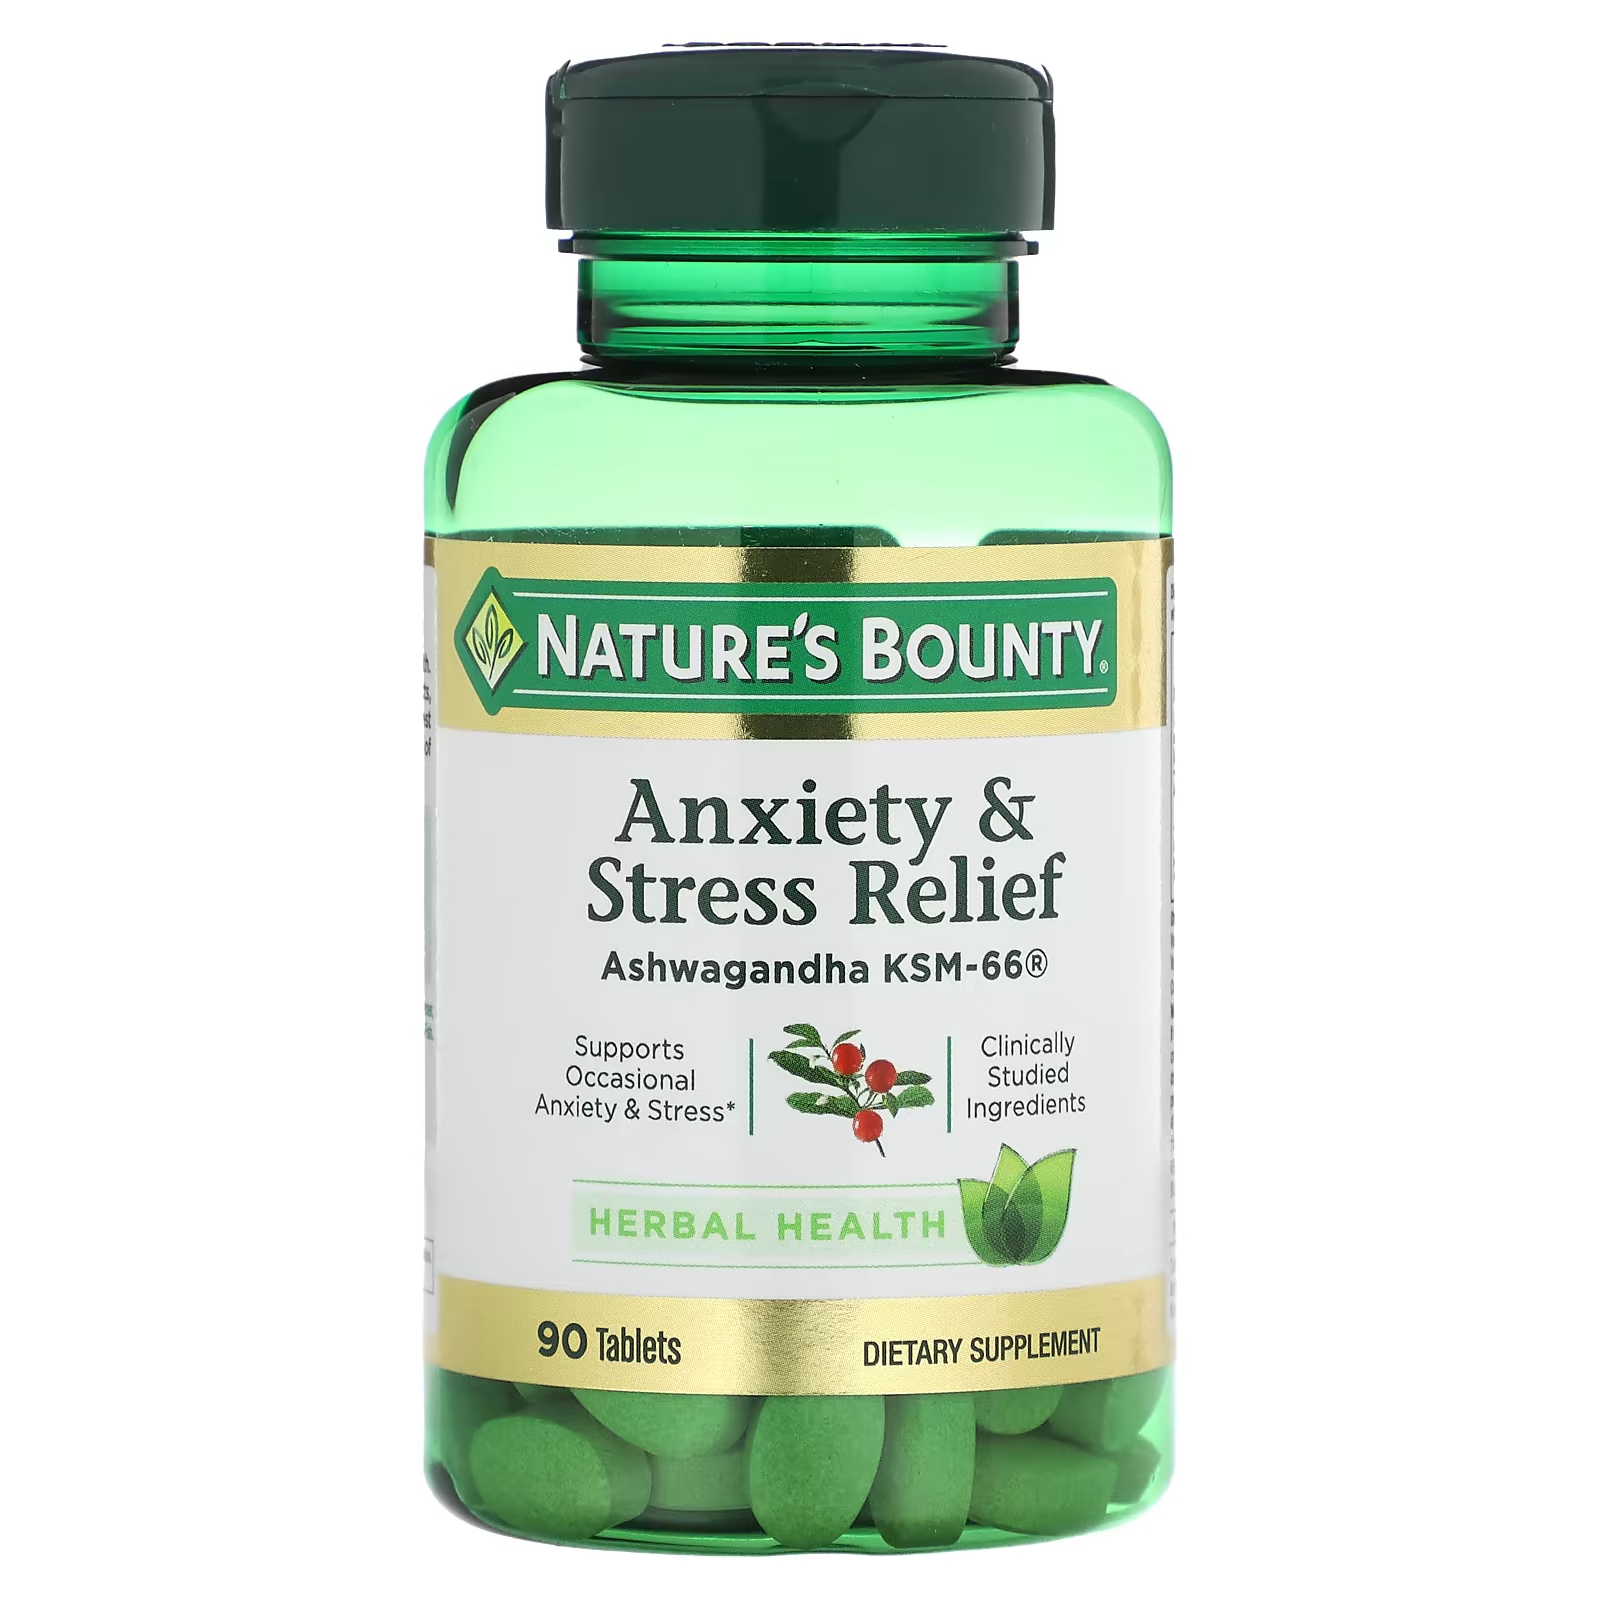 Пищевая добавка Nature's Bounty для снятия тревоги и стресса, 90 таблеток allmax ашваганда ksm 66 300 мг 60 растительных капсул